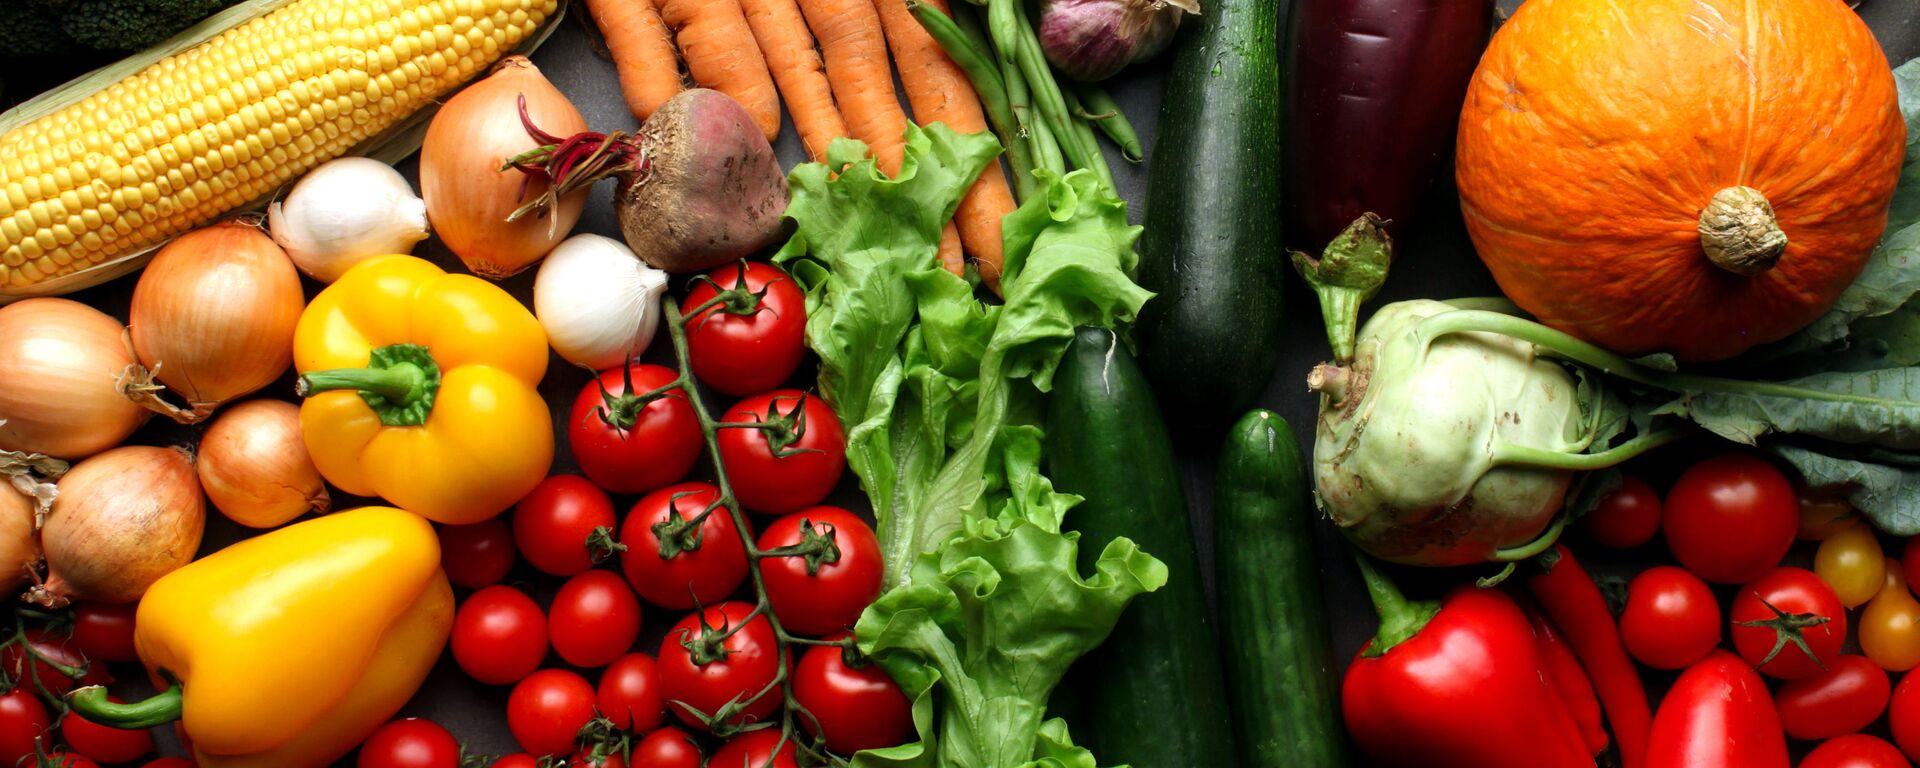 خوردن سبزیجات خام به صحت مضر است - اسپوتنیک افغانستان  , 1920, 06.10.2019